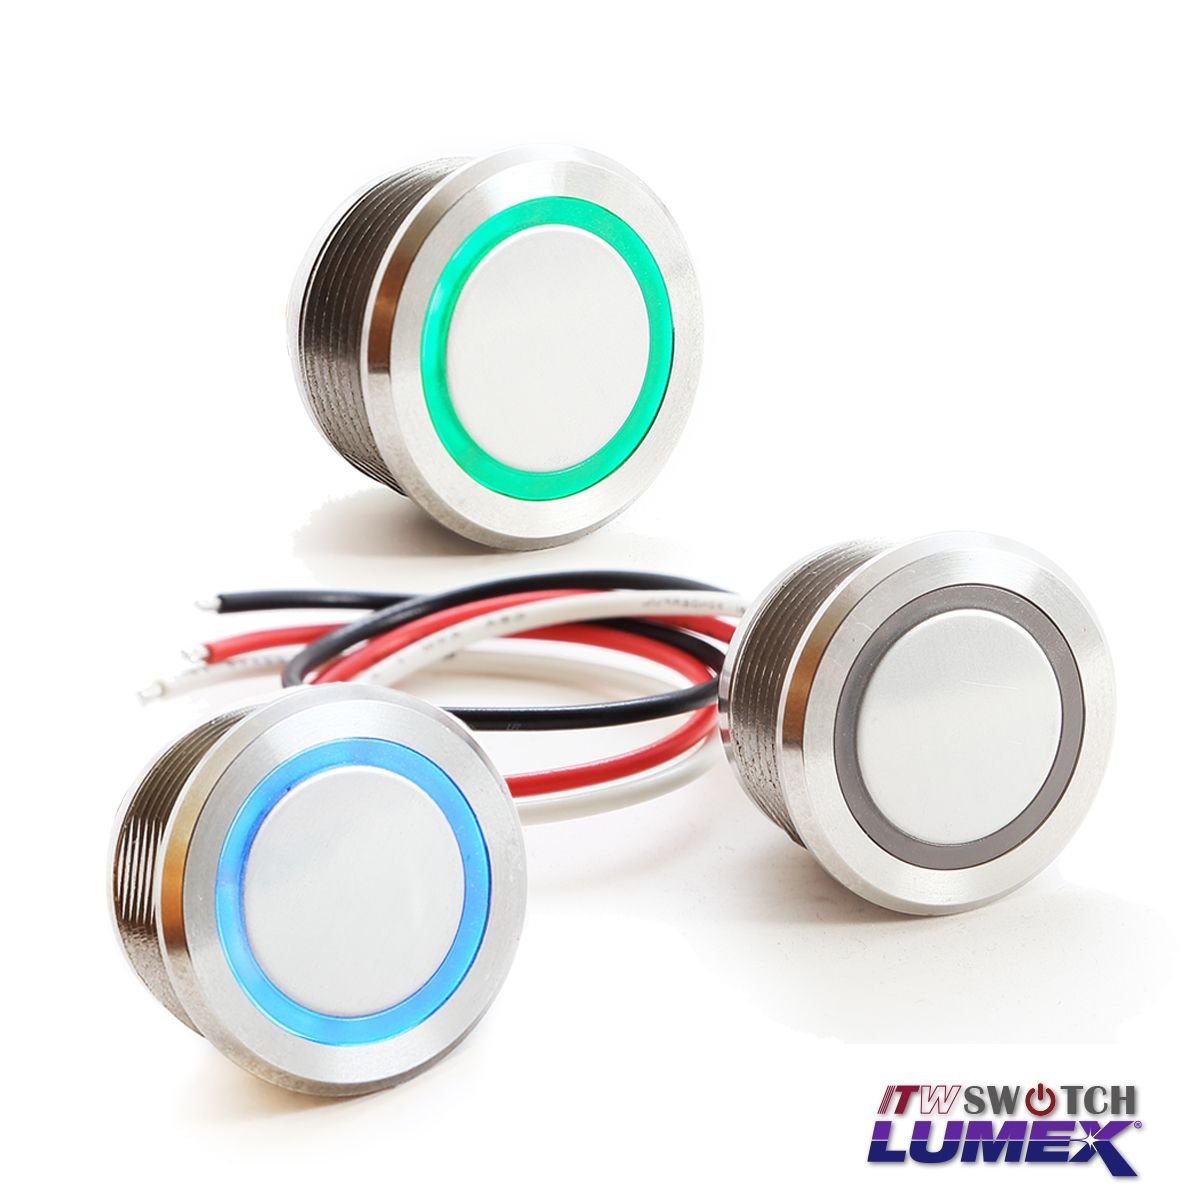 Proveedores, fabricantes de interruptores táctiles LED de 90